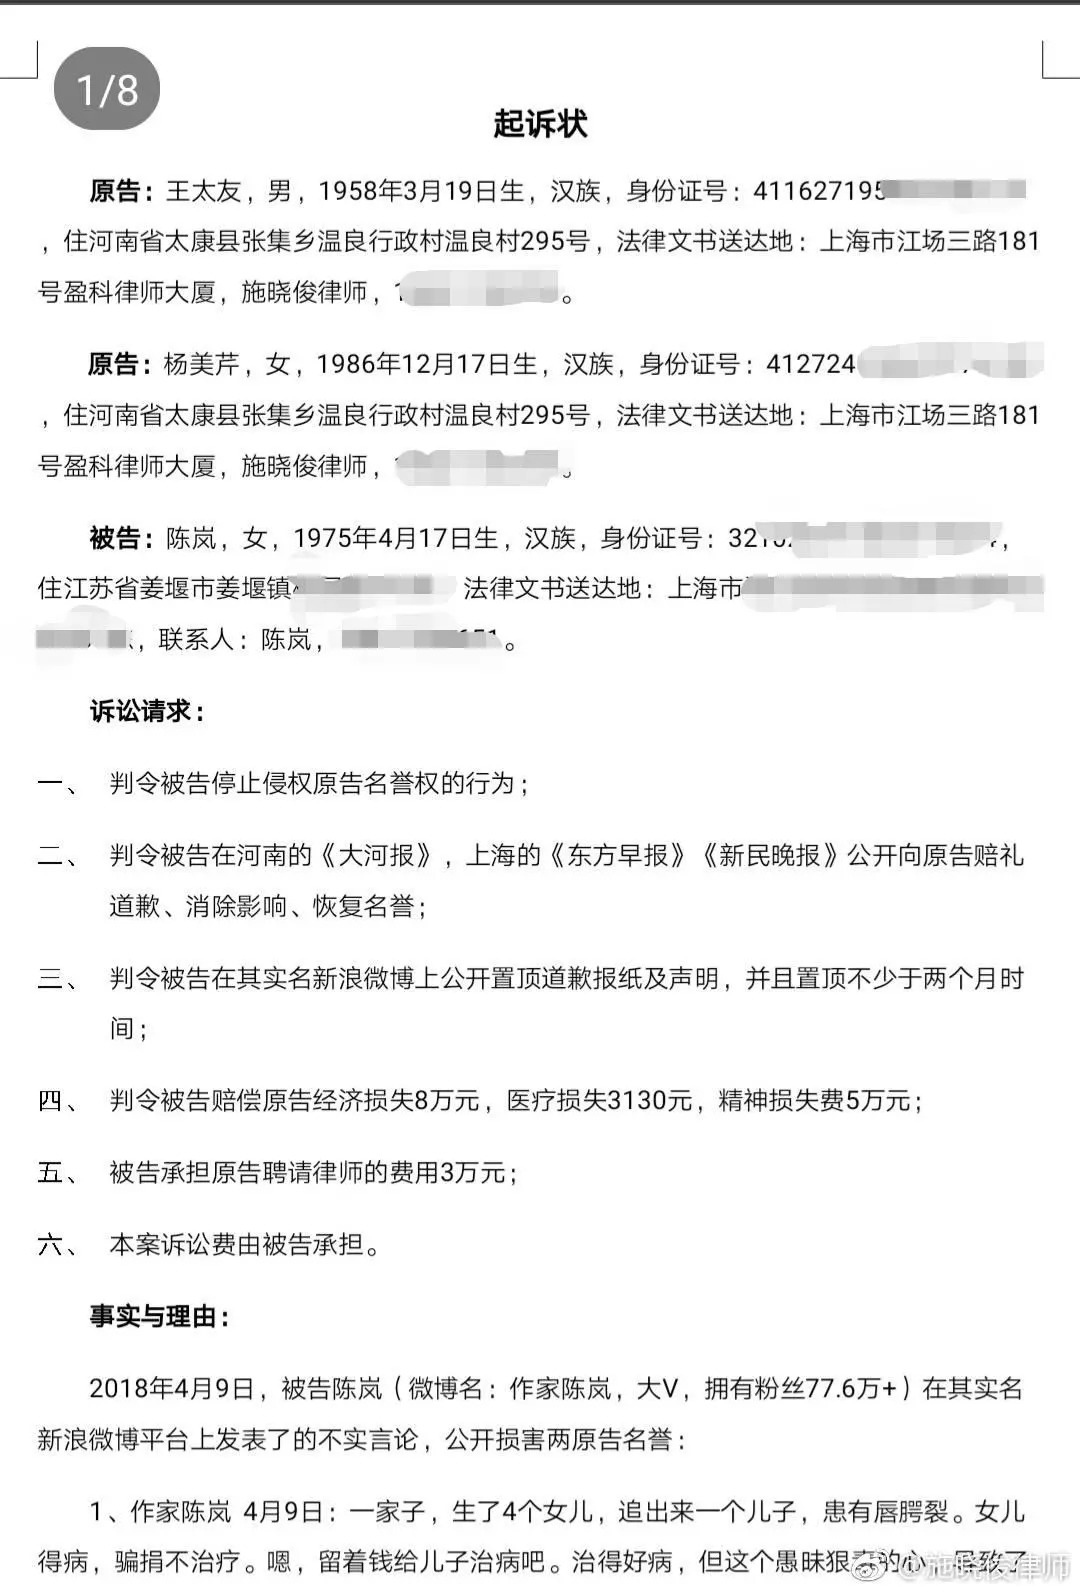 小凤雅家人诉作家陈岚名誉侵权 陈岚回应:并不存在造谣